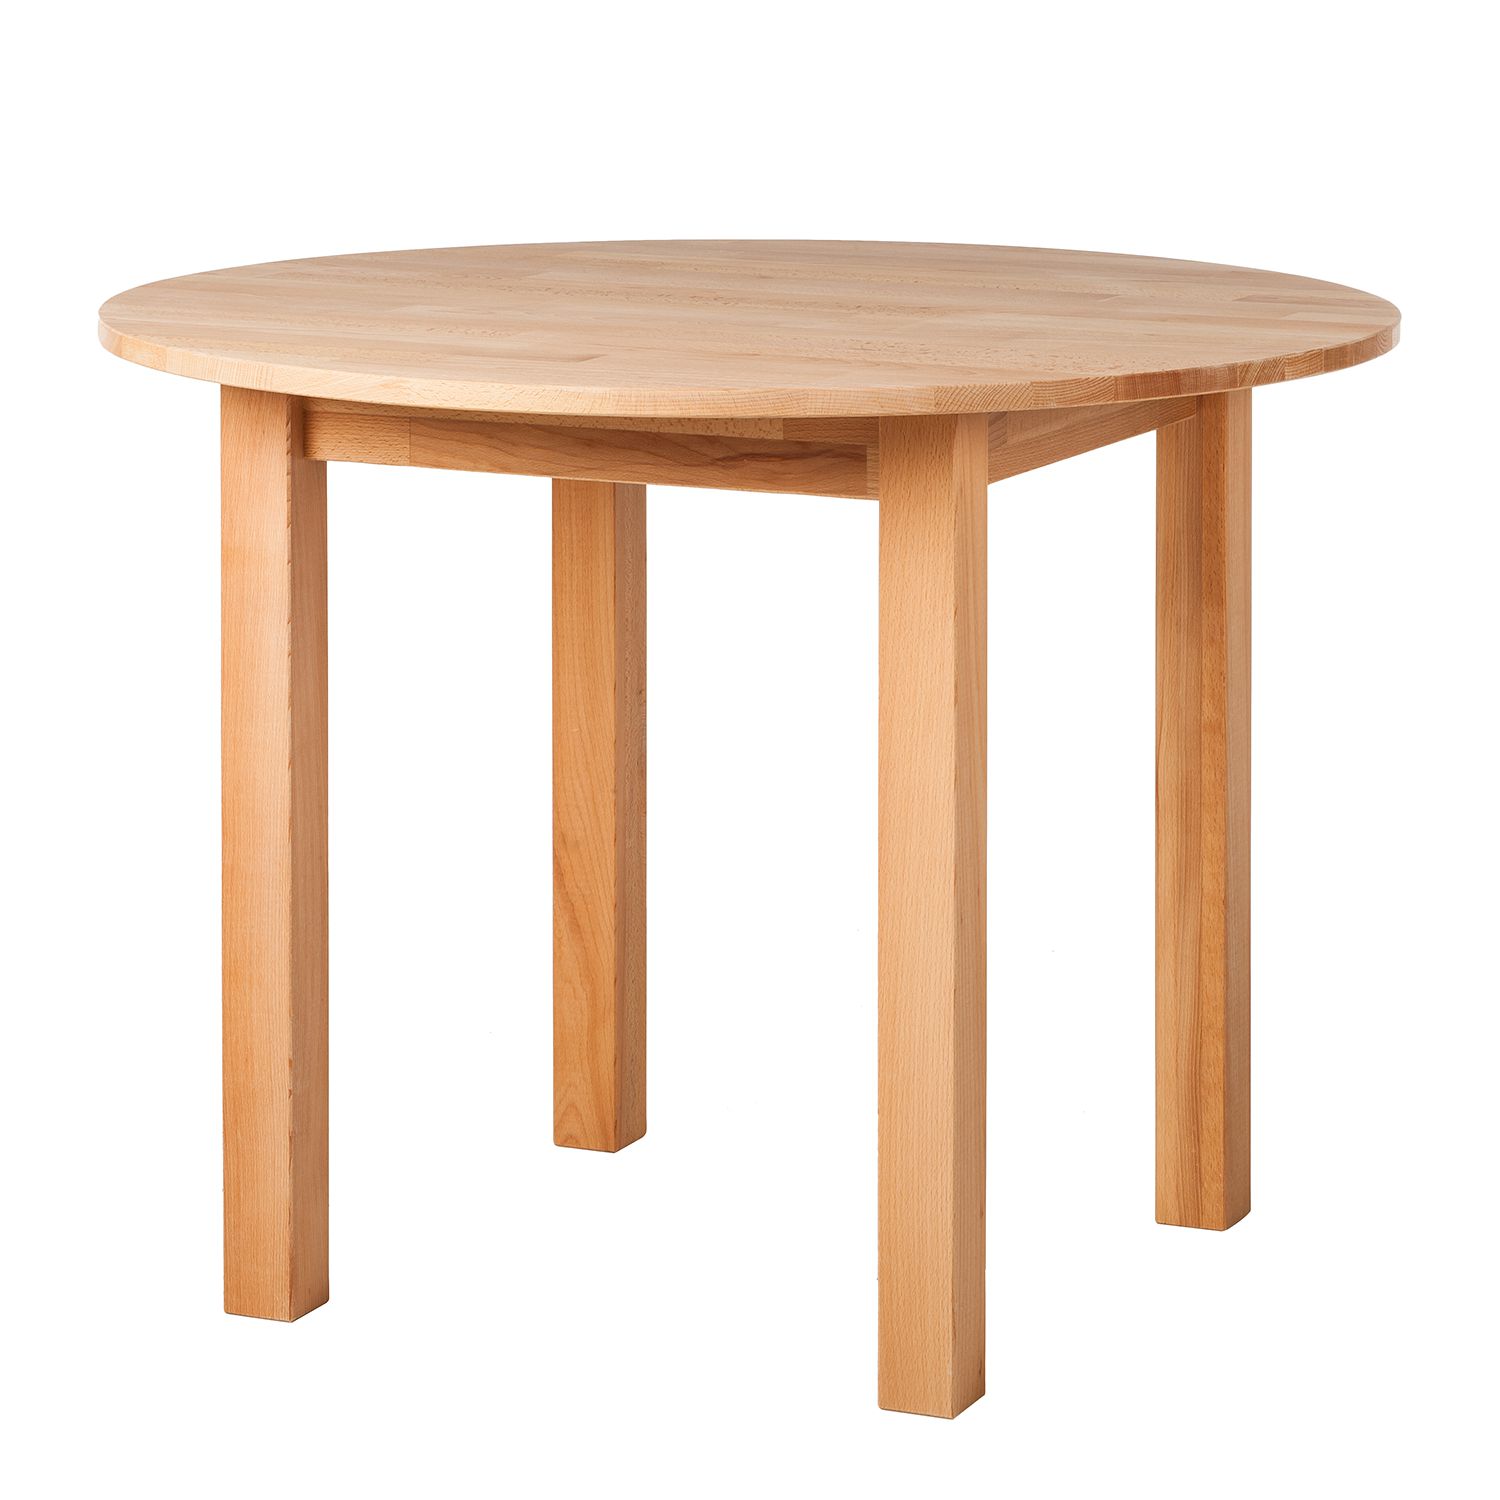 Круглый деревянный столик